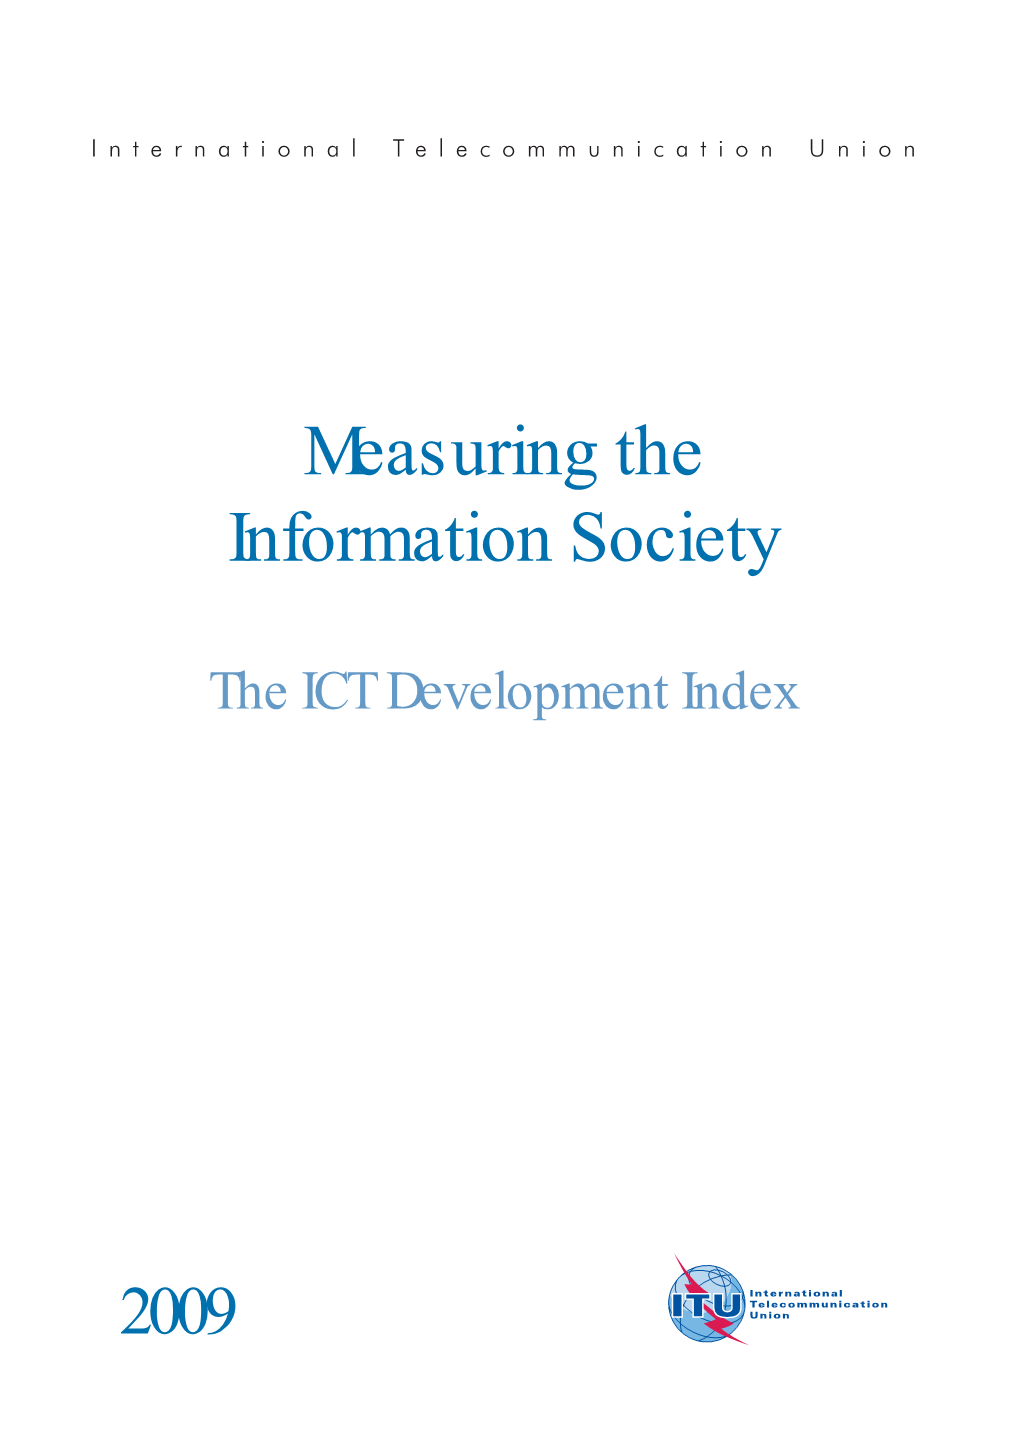 The ICT Development Index 2009